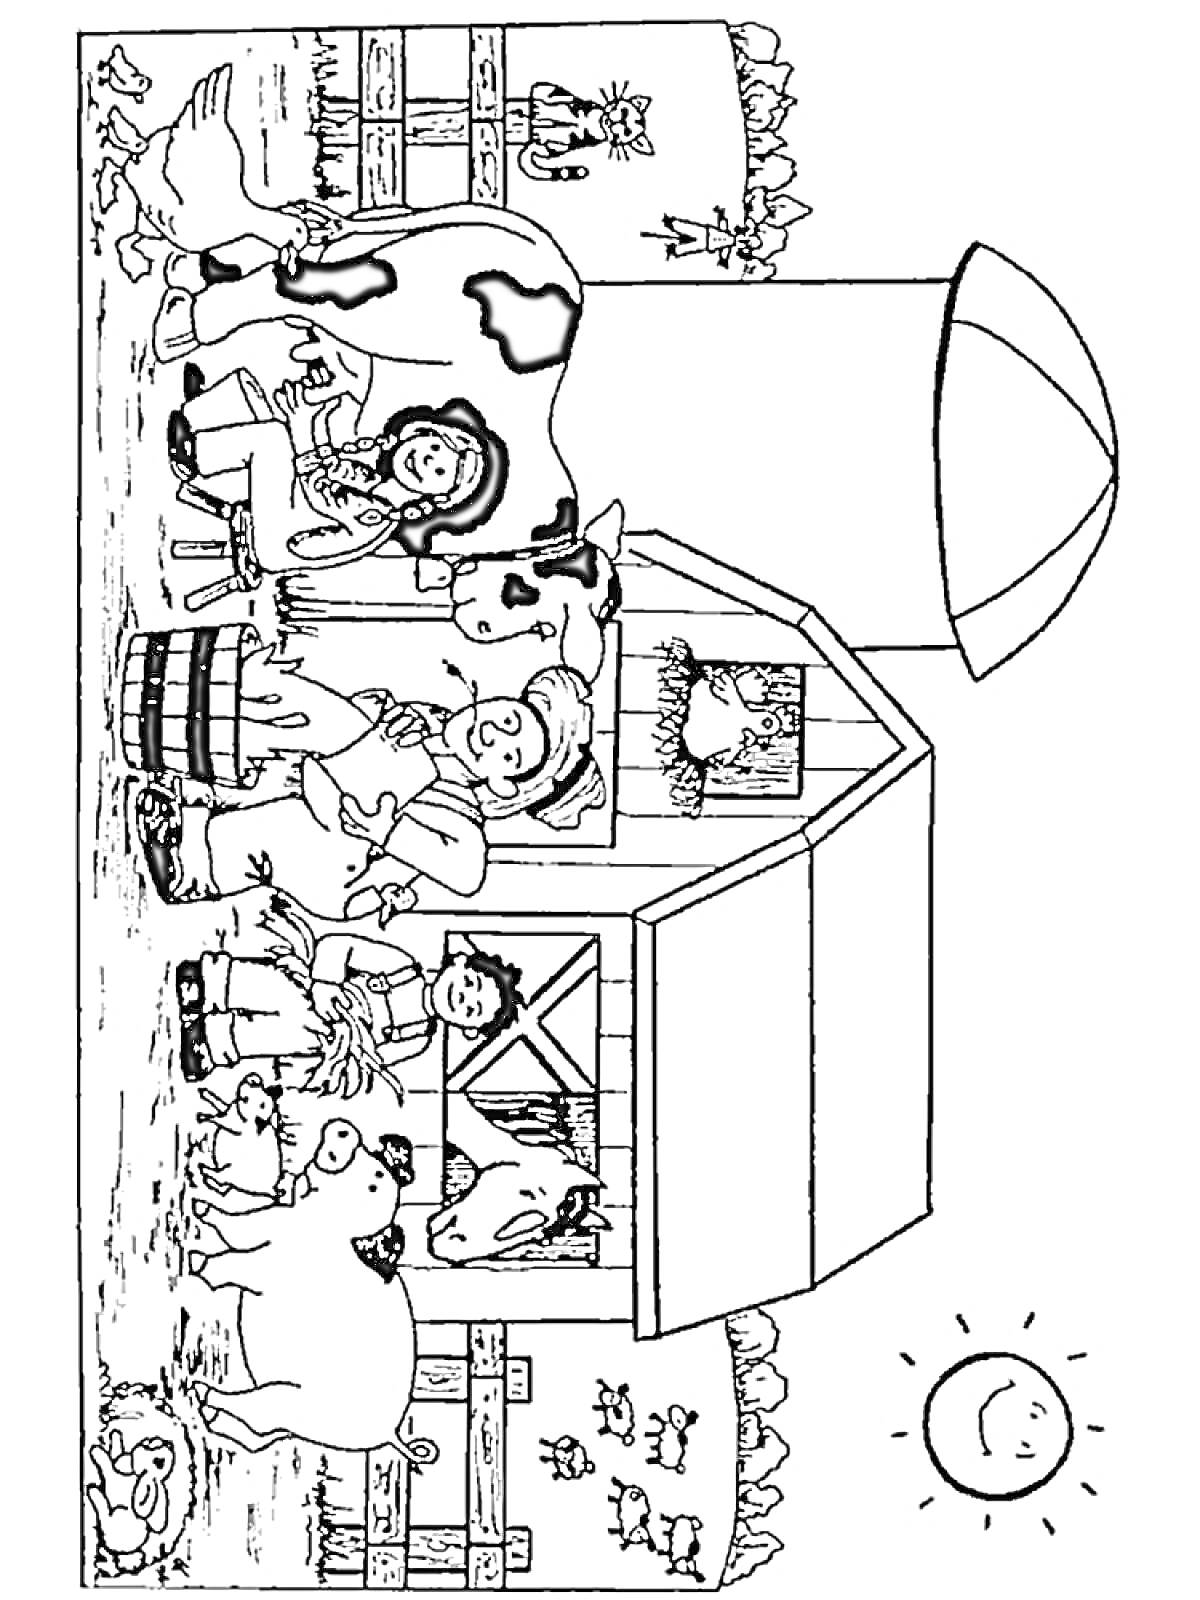 Раскраска Ферма с коровами, петухом, утками, трактором, собаками, детьми, курятником, домом и солнцем